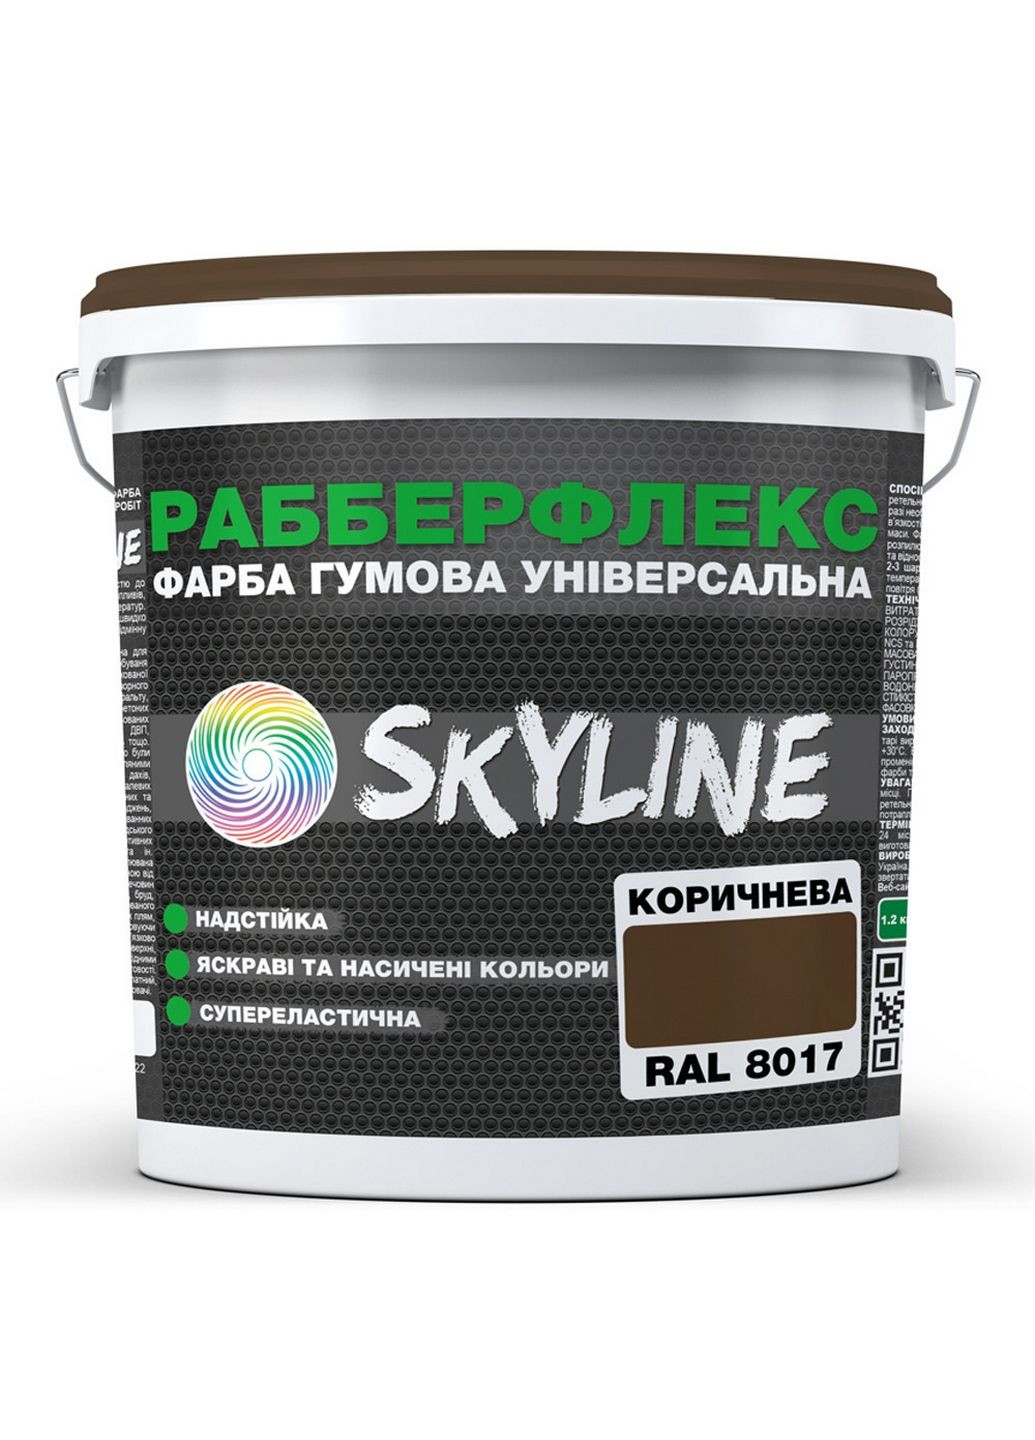 Сверхстойкая краска резиновая суперэластичная «РабберФлекс» 3,6 кг SkyLine (283326163)